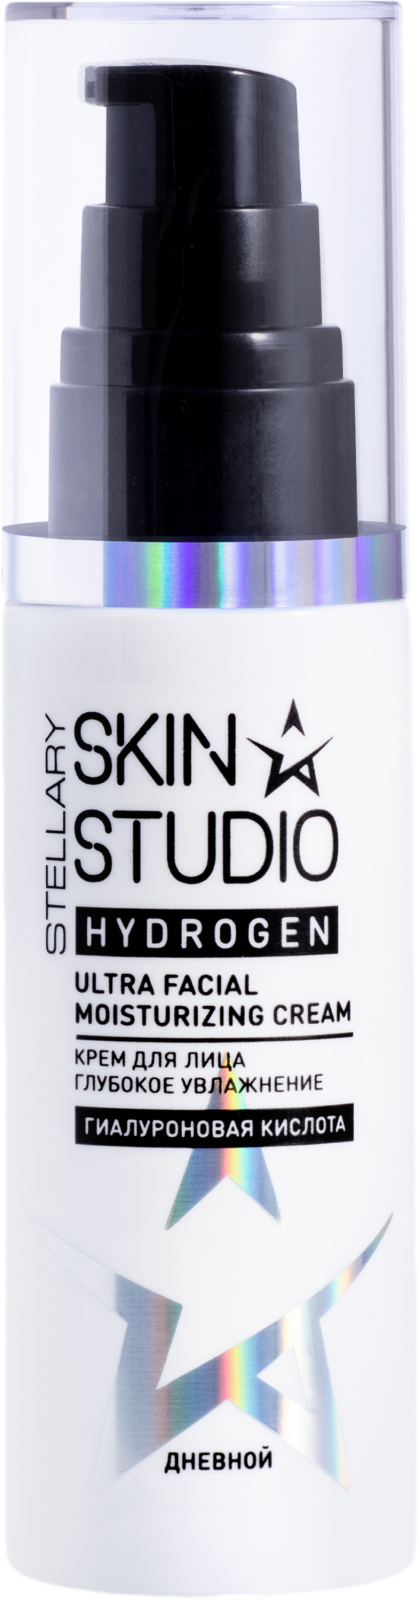 фото упаковки Stellary Skin Studio Hydrogen Крем для лица дневной увлажняющий